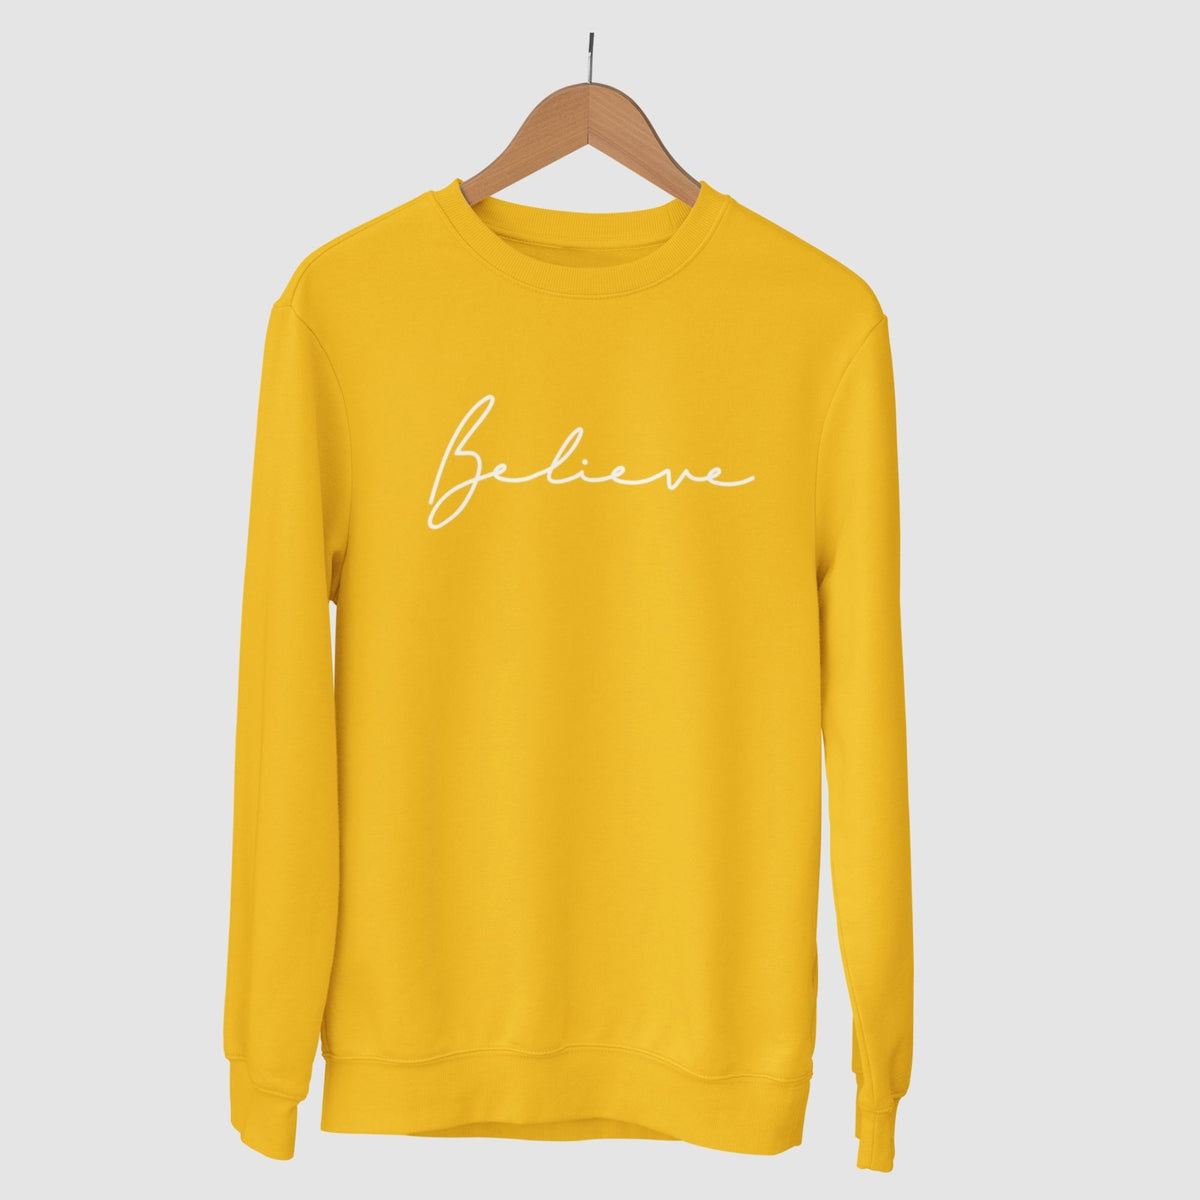 believe-cotton-printed-unisex-golden-yellow-sweatshirt-gogirgit-com